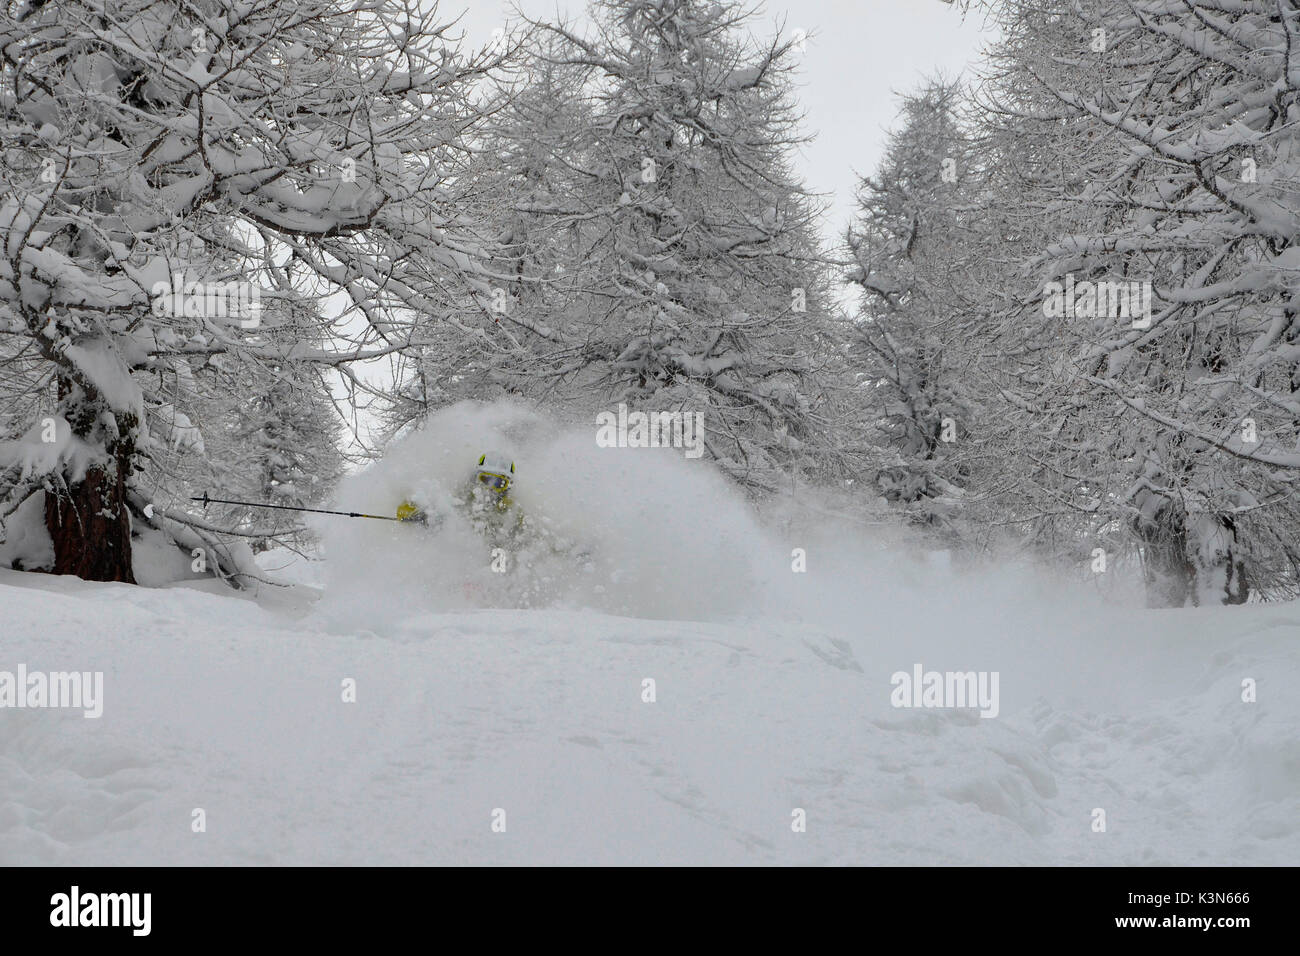 Freeride sky con un sacco di neve,(faceshot),Prali, Piemonte, Italia Foto Stock